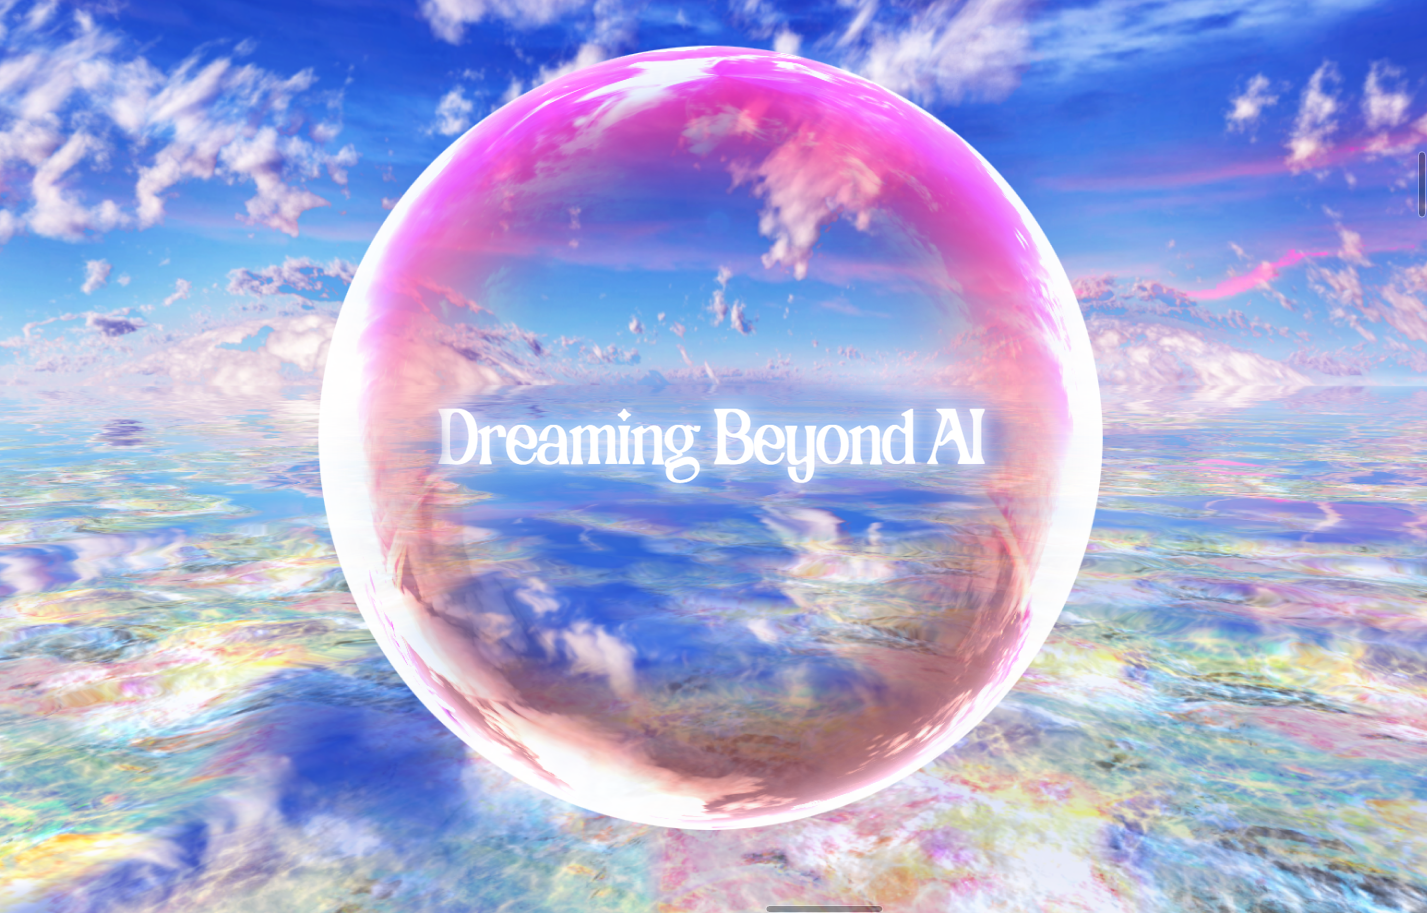 Man sieht einen Banner für die ifa Tourneeausstellung Dreaming Beyond AI. Es ist eine pinke Seifenblase mit dem Text Dreaming Beyond AI zu sehen. Der Hintergrund ist hellblauer Himmel.